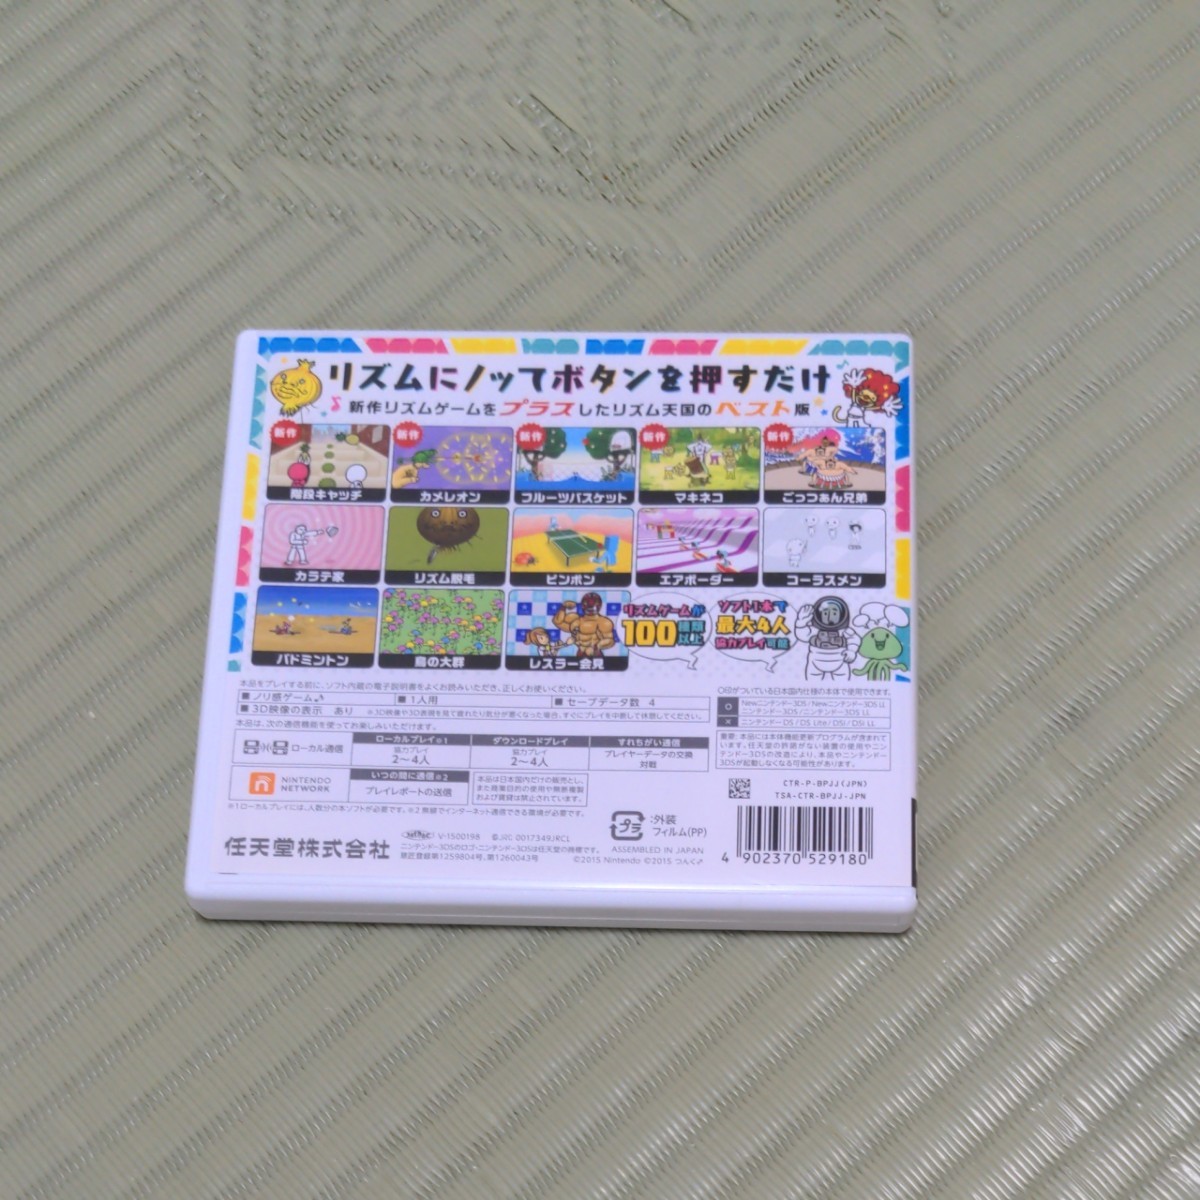 リズム天国ザ・ベスト+ 3DSソフト